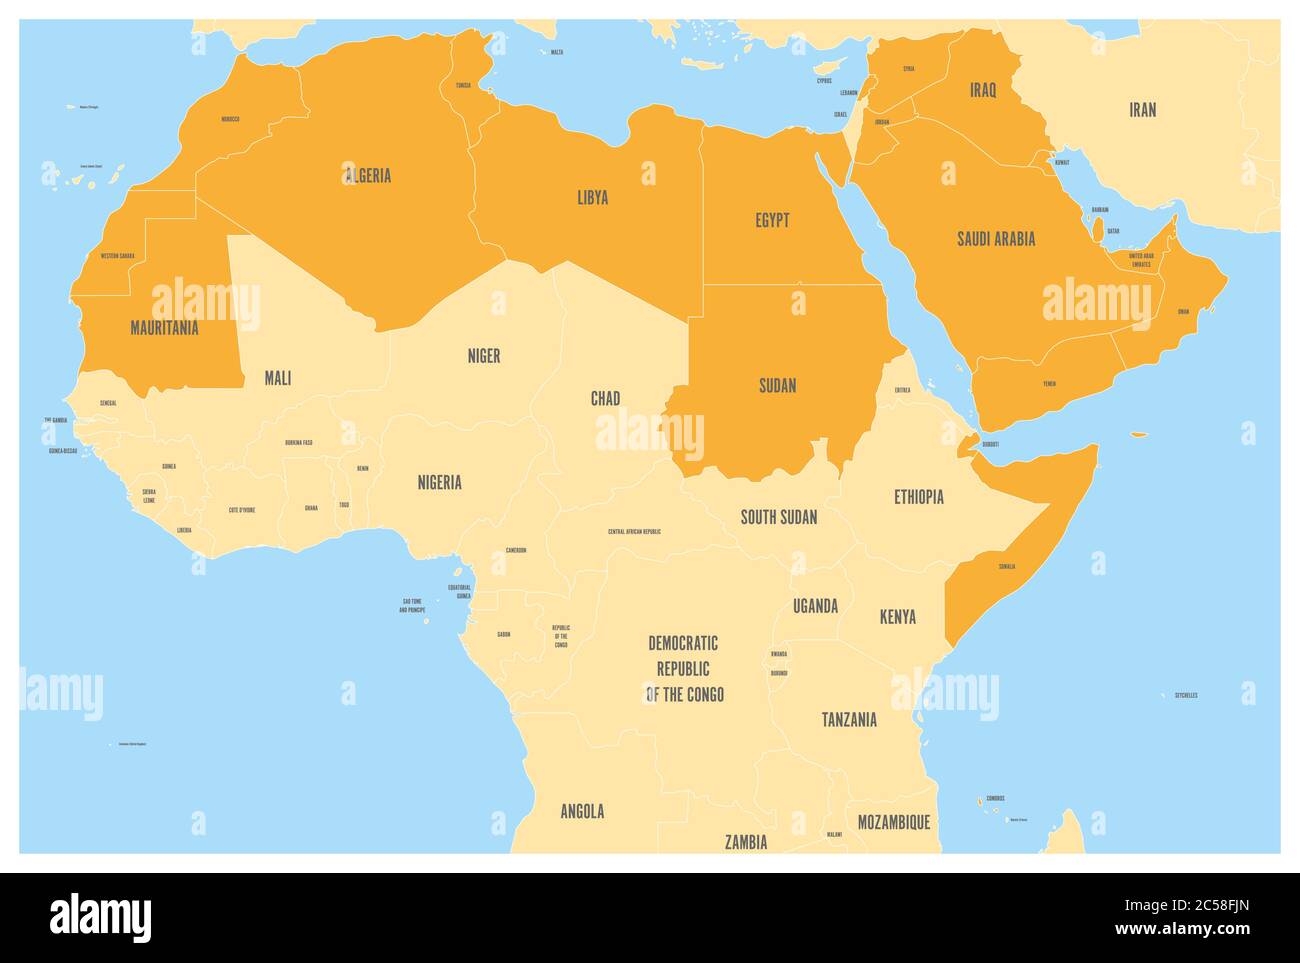 El mundo árabe establece un mapa político con 22 países de habla árabe de la Liga Árabe, con un color naranja. Región del Norte de África y Oriente Medio. Mapa vectorial con aguas azules y tierras amarillas. Ilustración del Vector